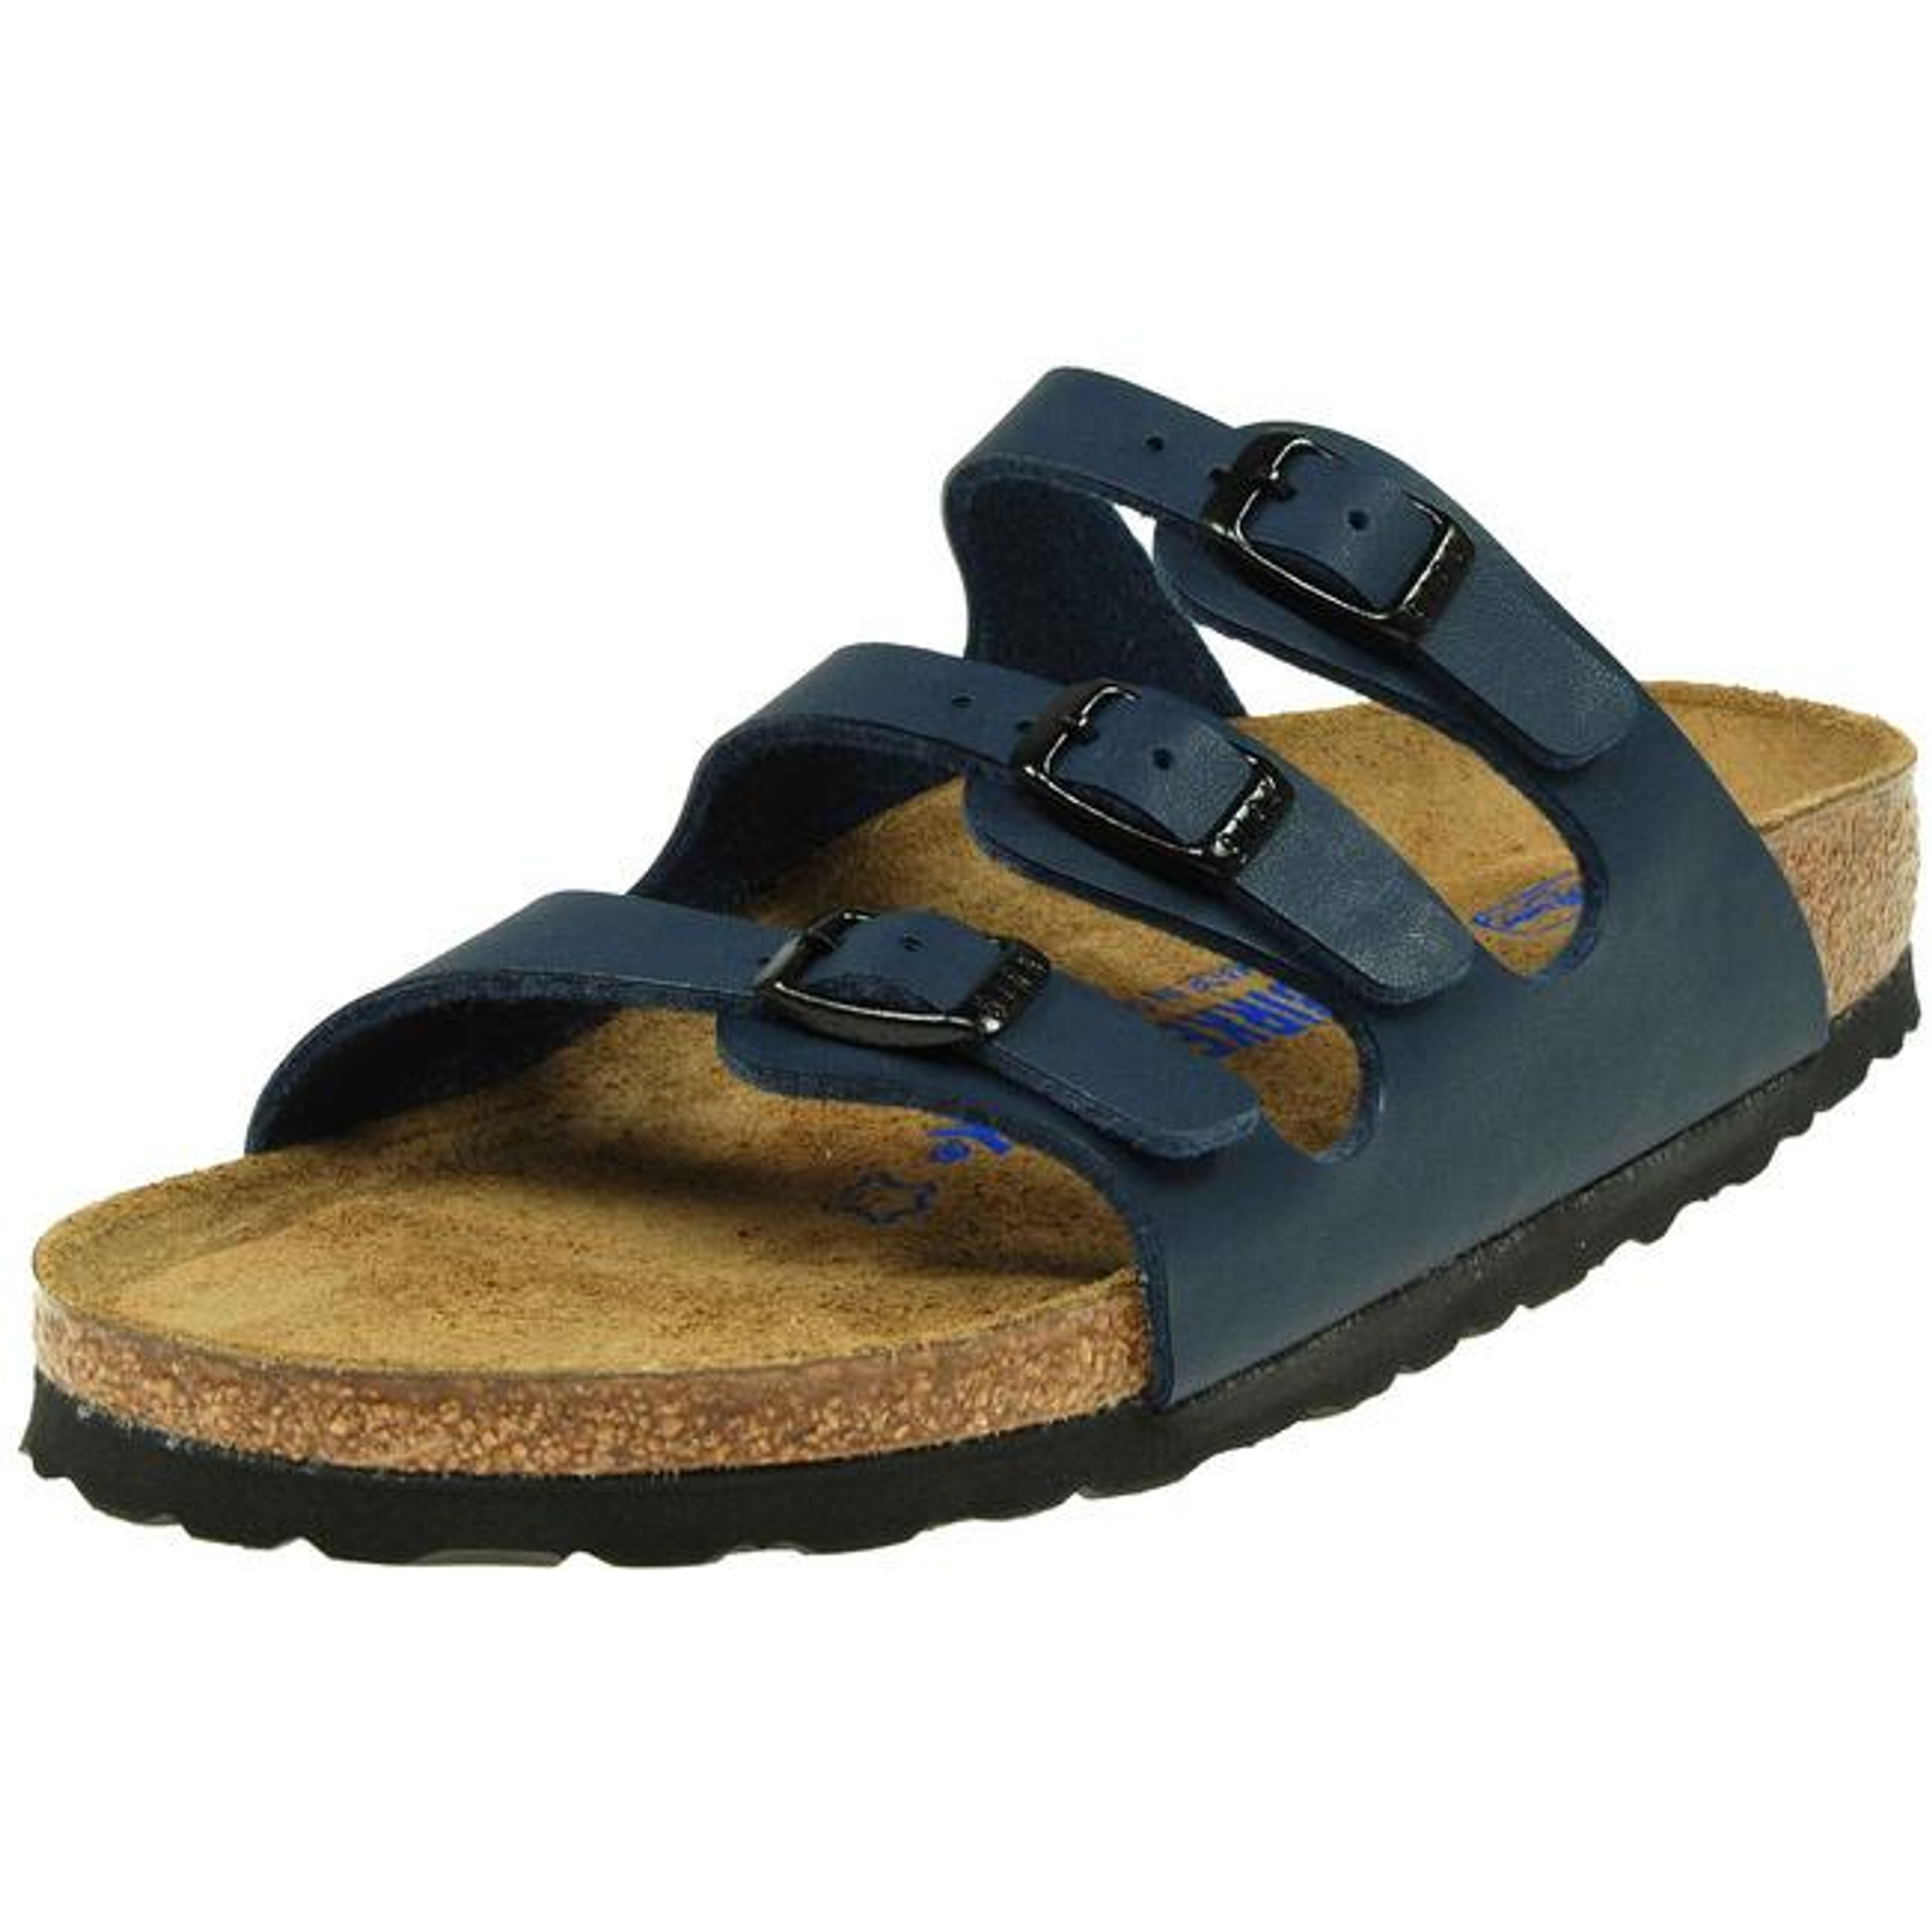 Birkenstock Florida Sandals Shoes Birko-Flor Soft SFB Flip-Flops Slides ...